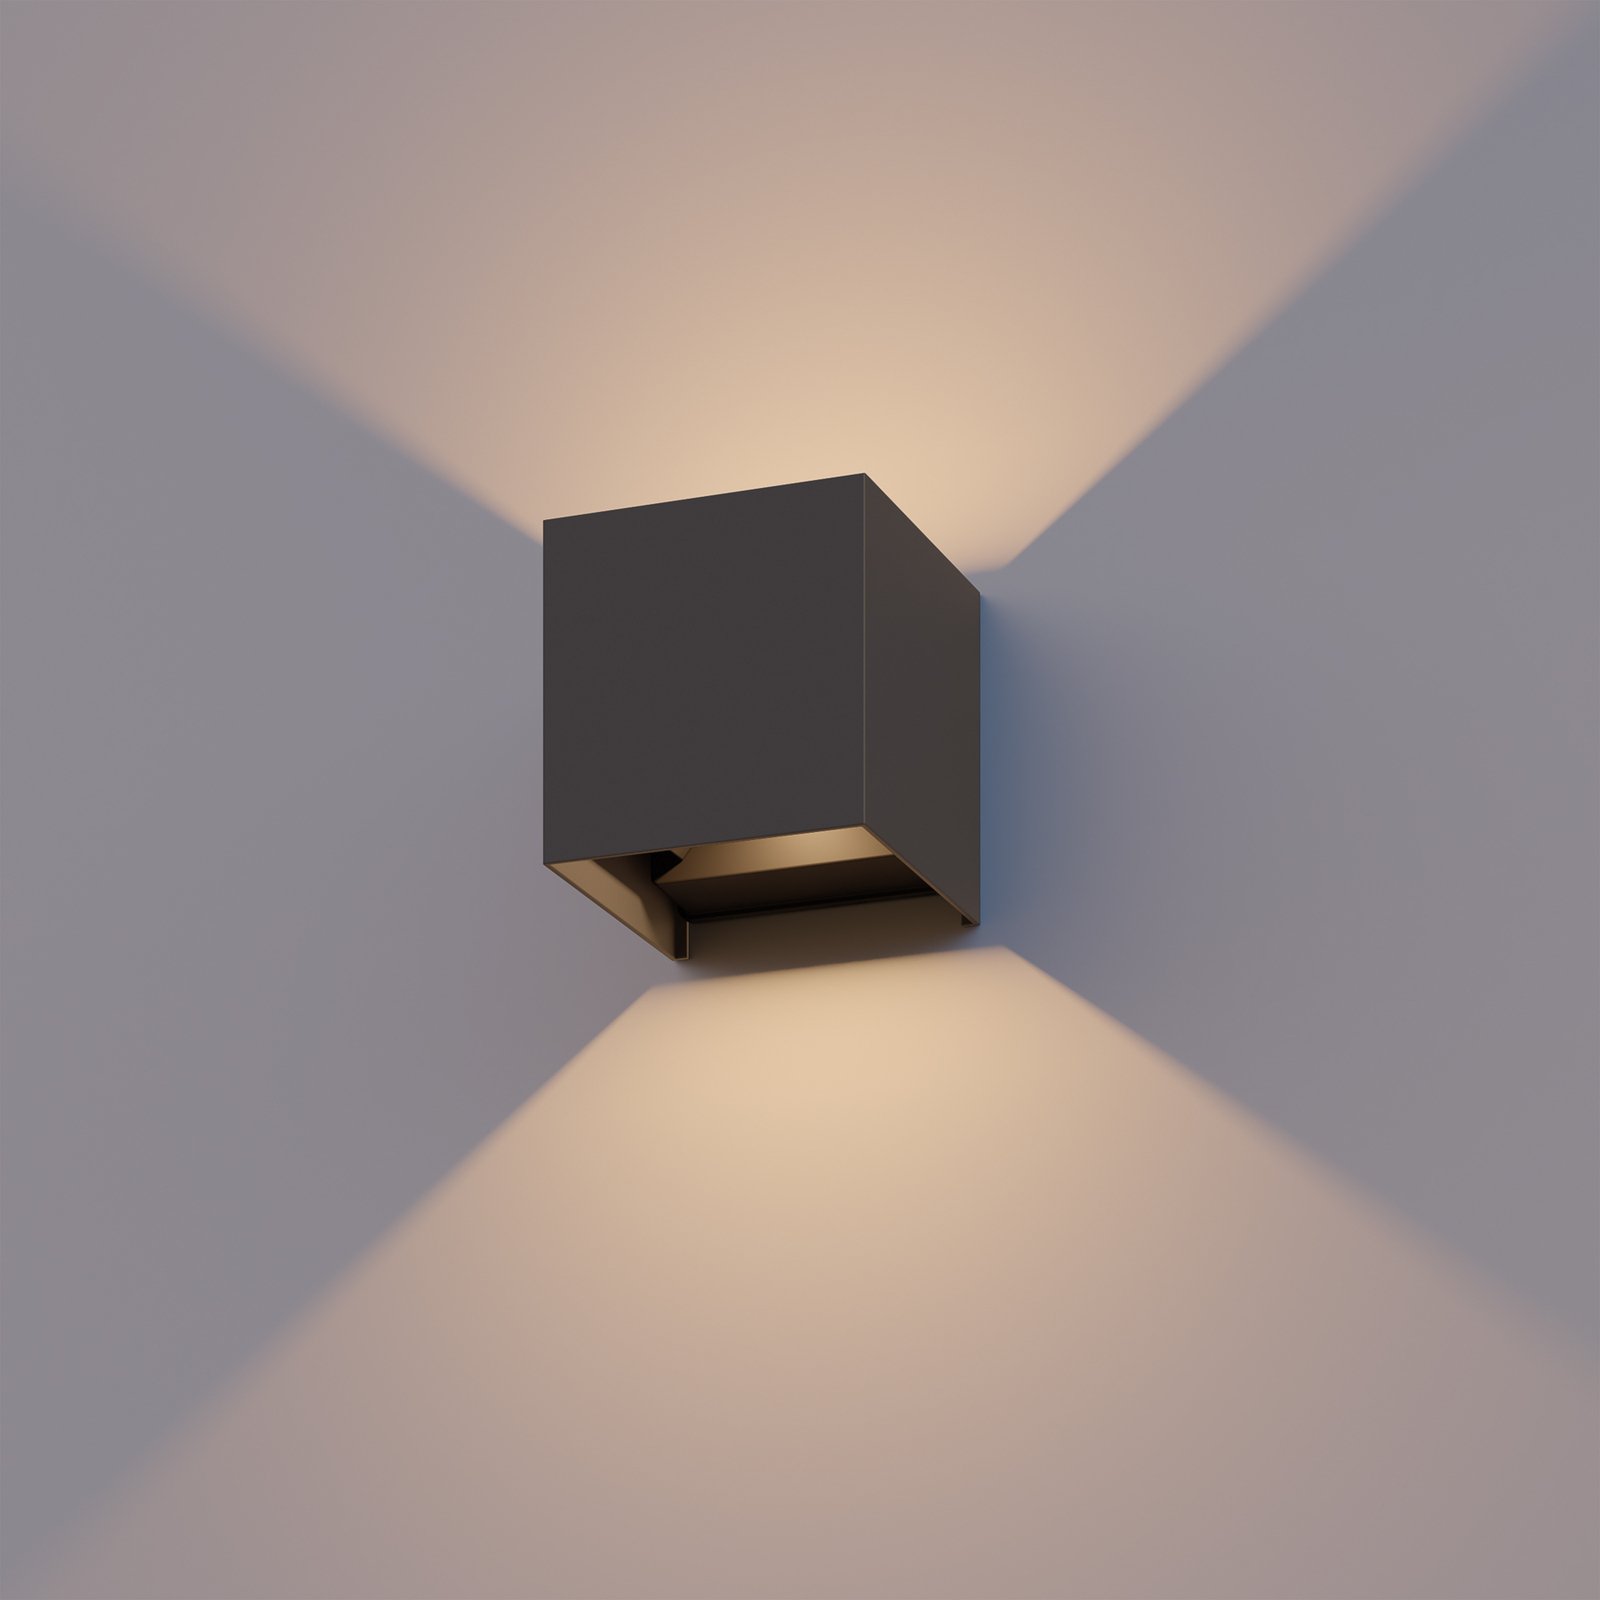 Venkovní nástěnné svítidlo Calex LED Cube, nahoru/dolů, výška 10 cm,